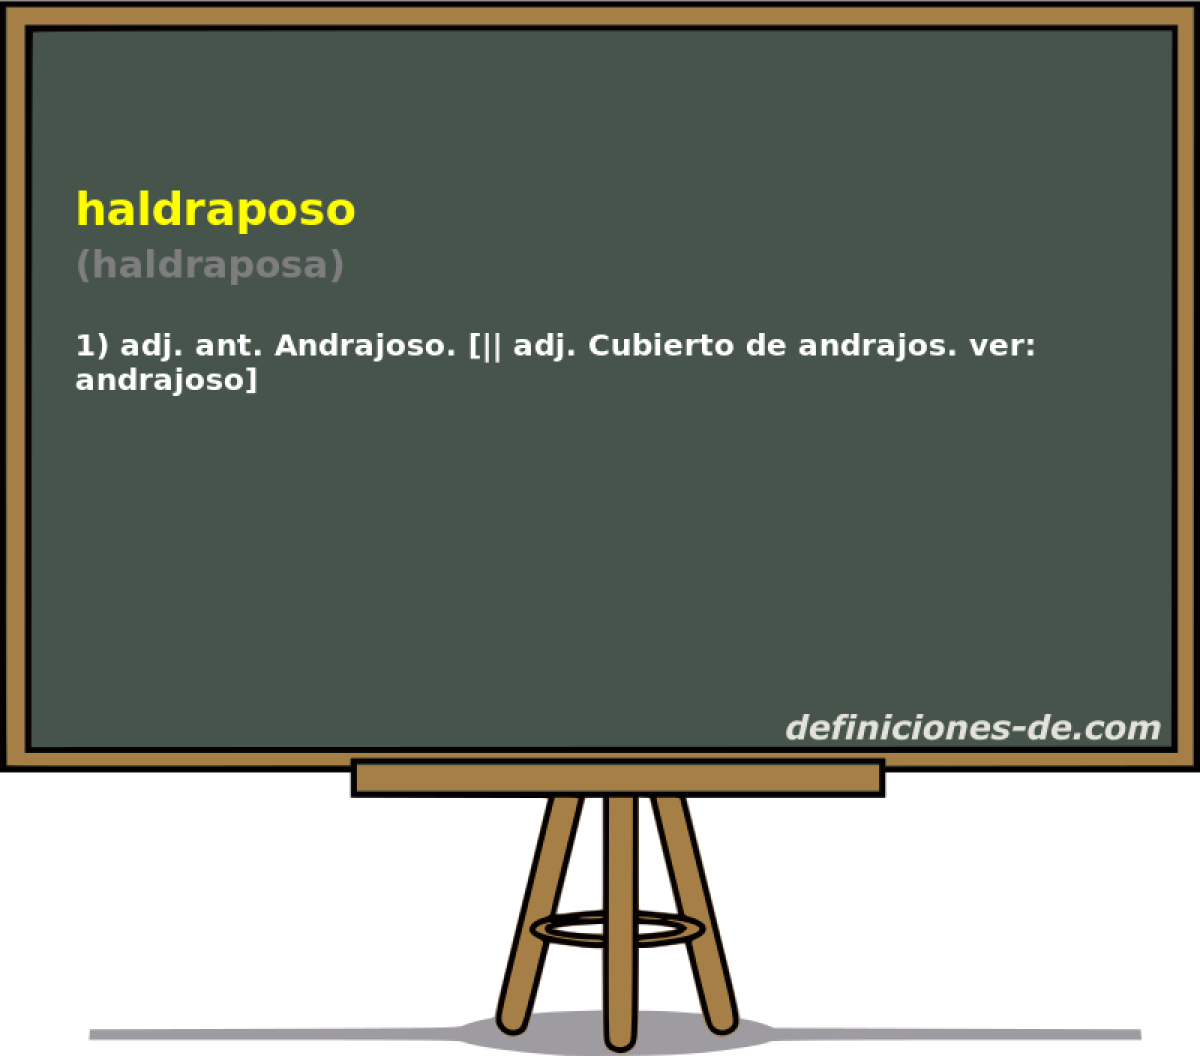 haldraposo (haldraposa)